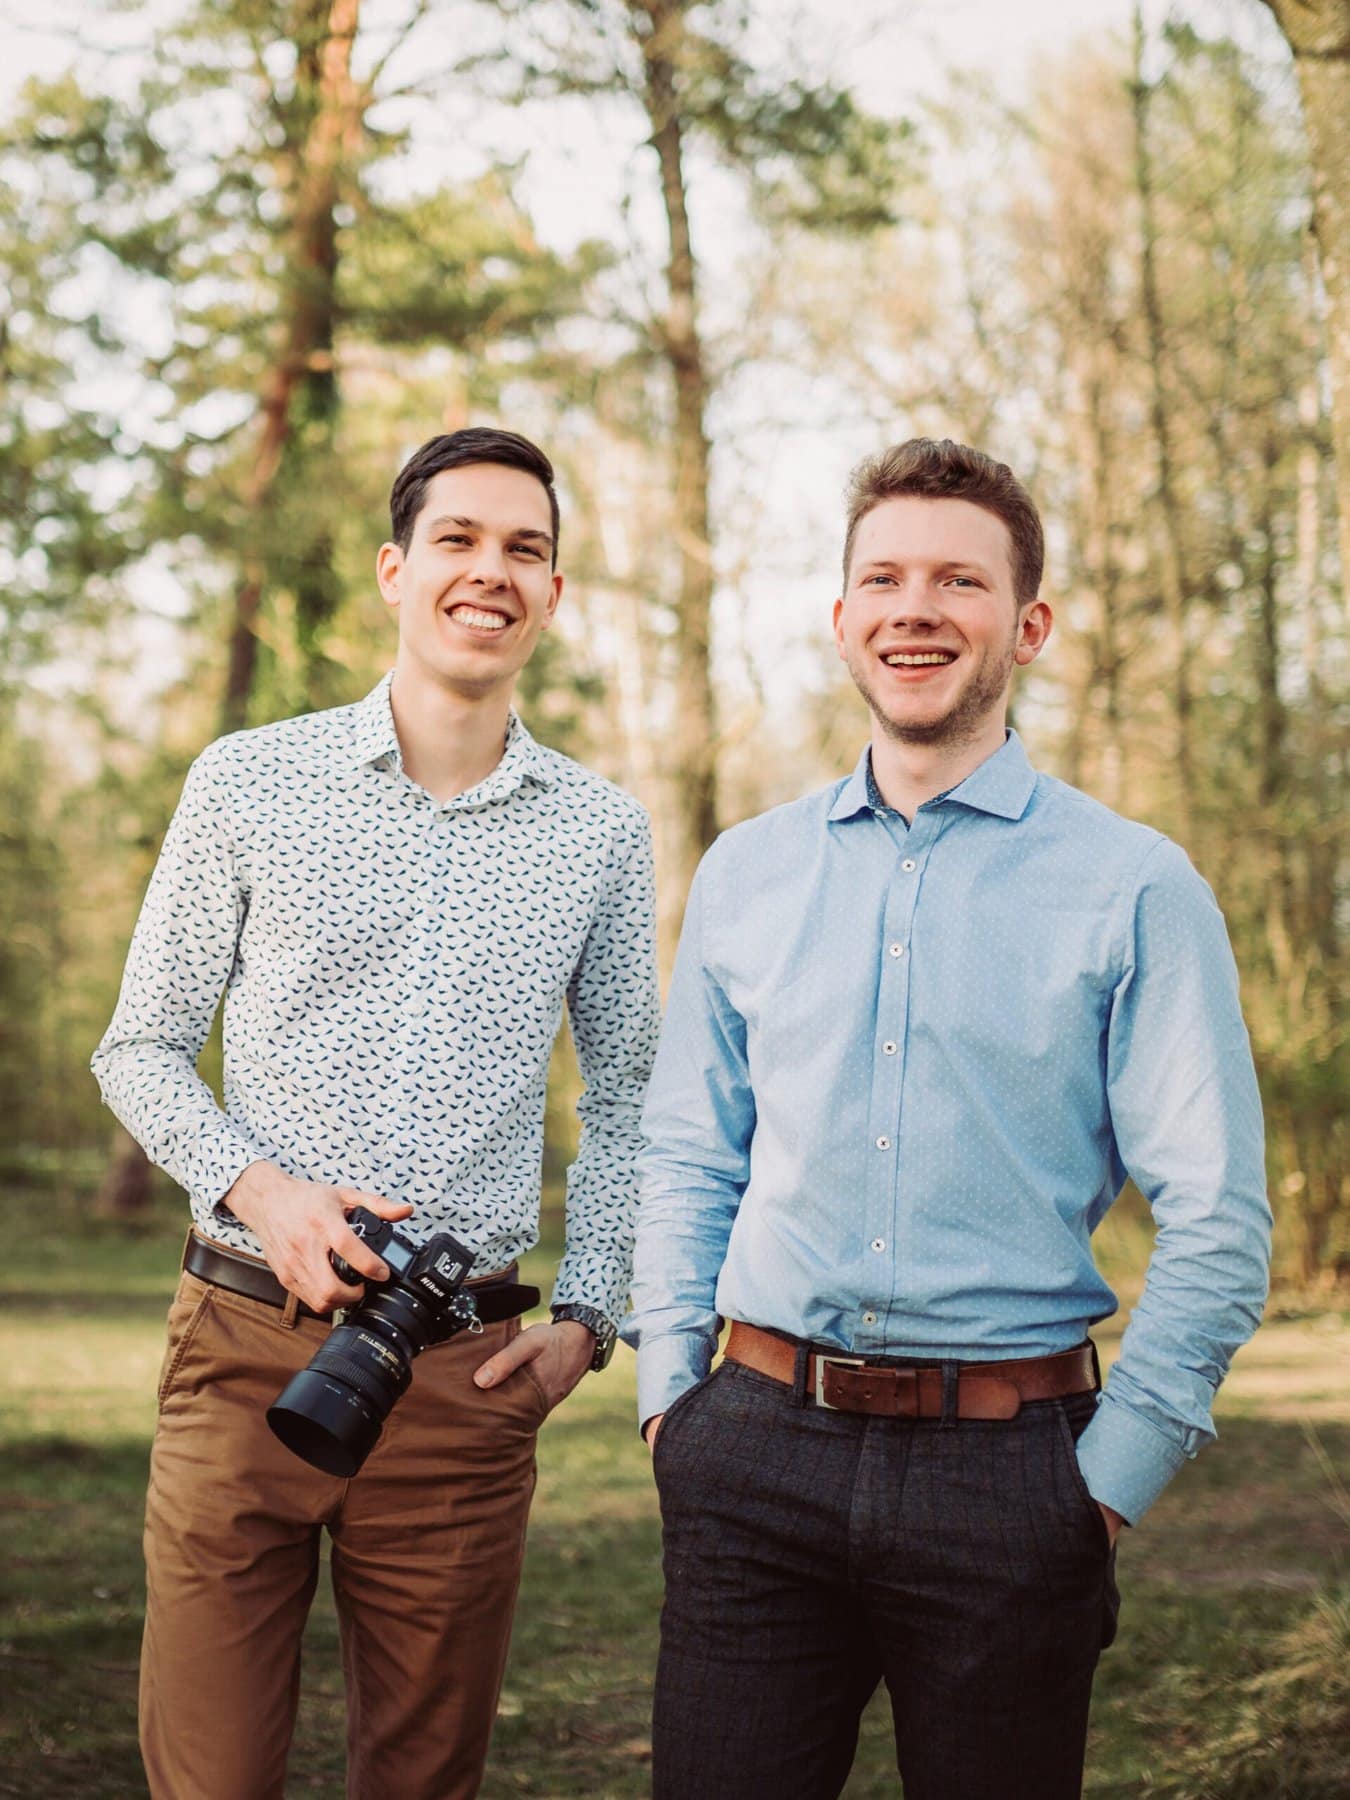 Das Hochzeitsfotografen Duo aus Augsburg: Andreas Aichele und Daniel Fürst